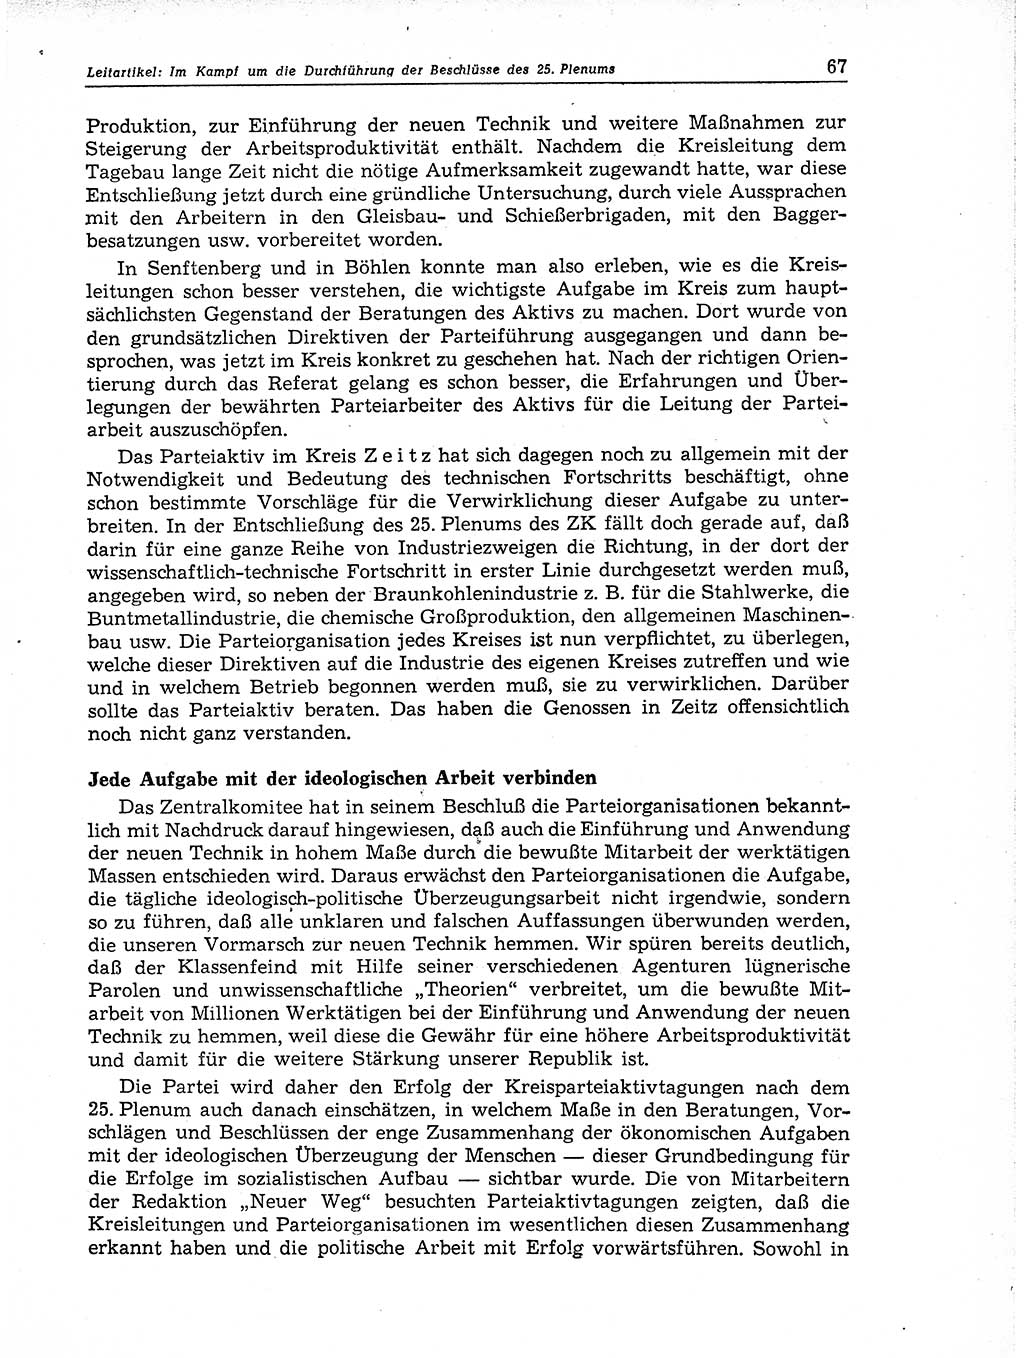 Neuer Weg (NW), Organ des Zentralkomitees (ZK) der SED (Sozialistische Einheitspartei Deutschlands) für Fragen des Parteiaufbaus und des Parteilebens, 11. Jahrgang [Deutsche Demokratische Republik (DDR)] 1956, Seite 67 (NW ZK SED DDR 1956, S. 67)